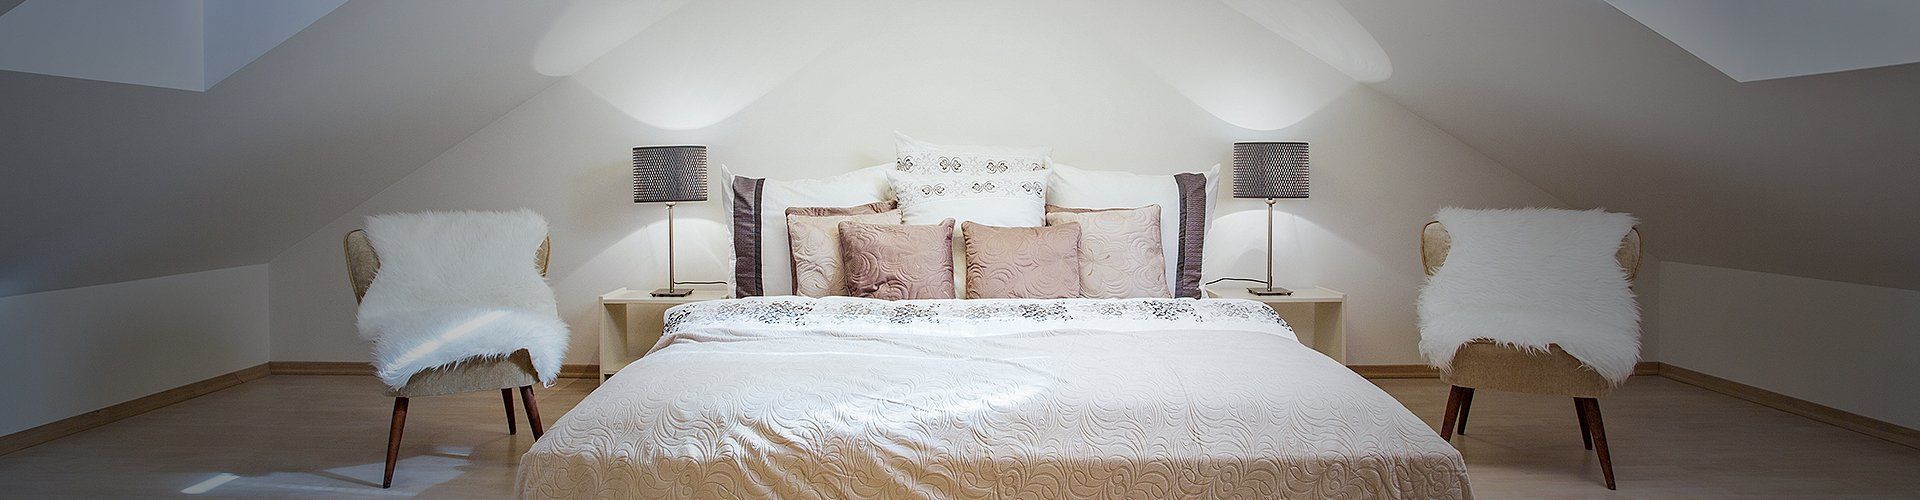 Elegant bedroom ideas